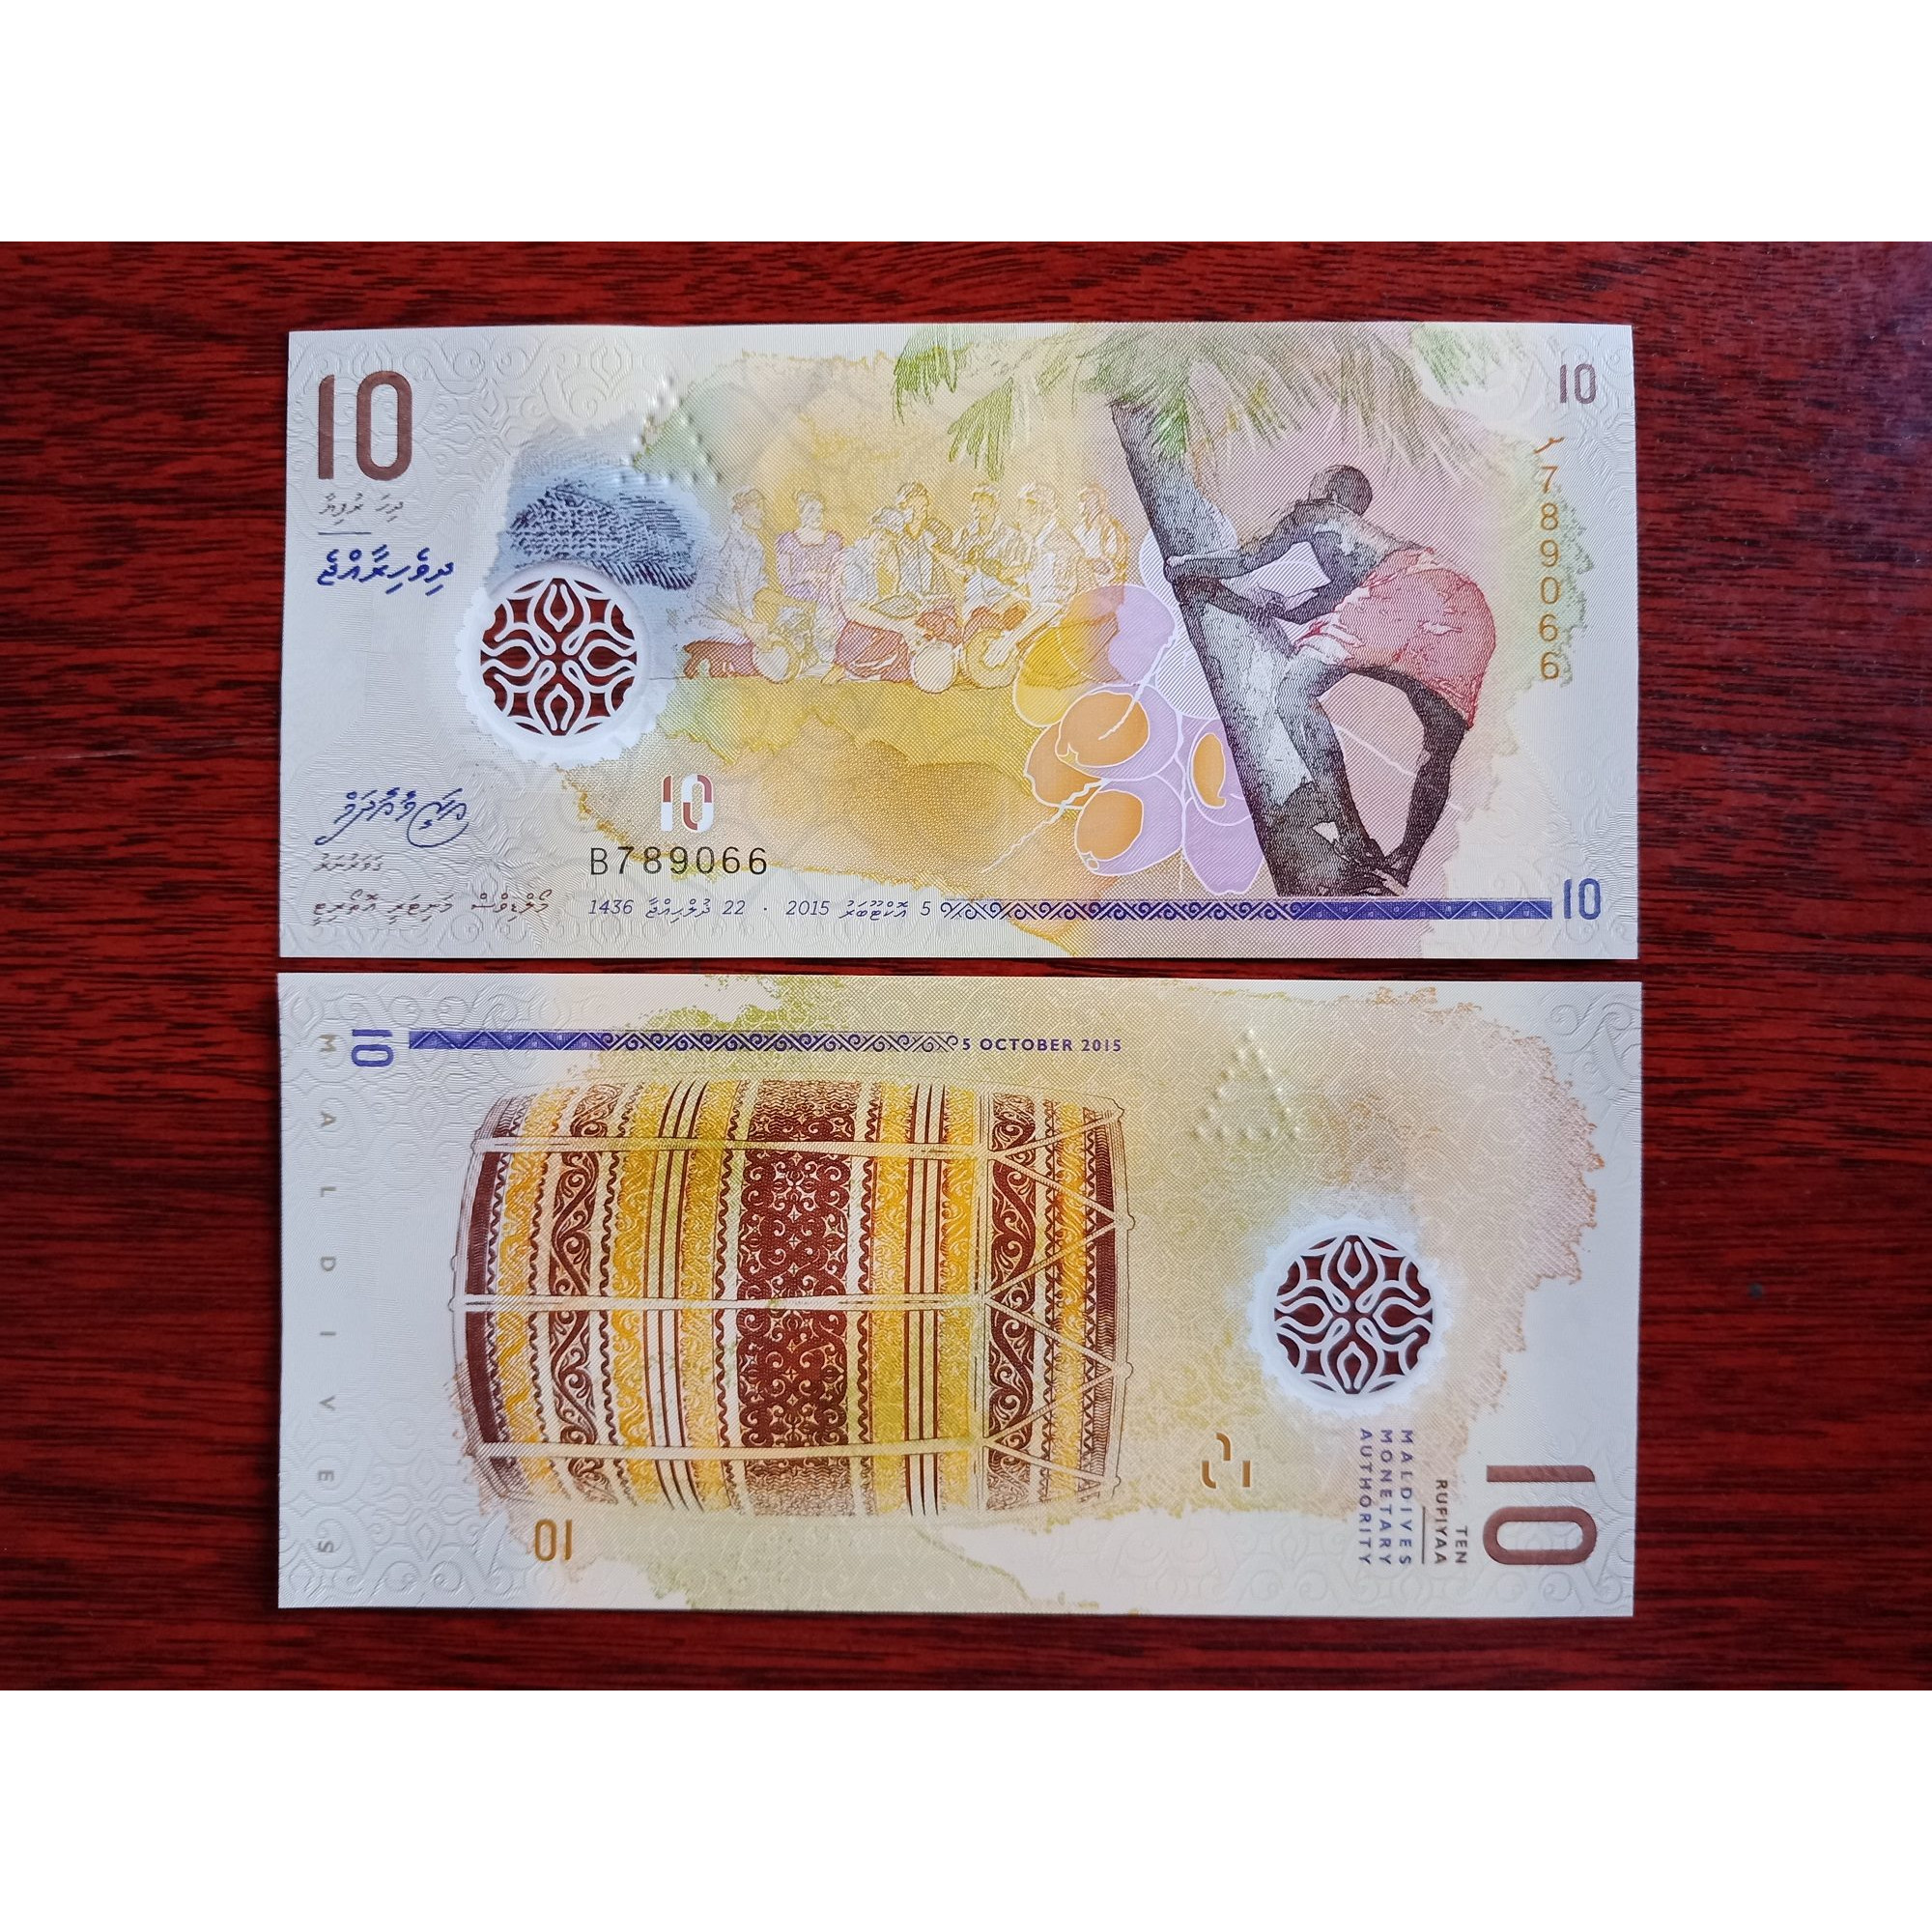 Tiền Maldives 10 Rufiyaa bằng polyme xưa sưu tầm - tặng kèm bao lì xì